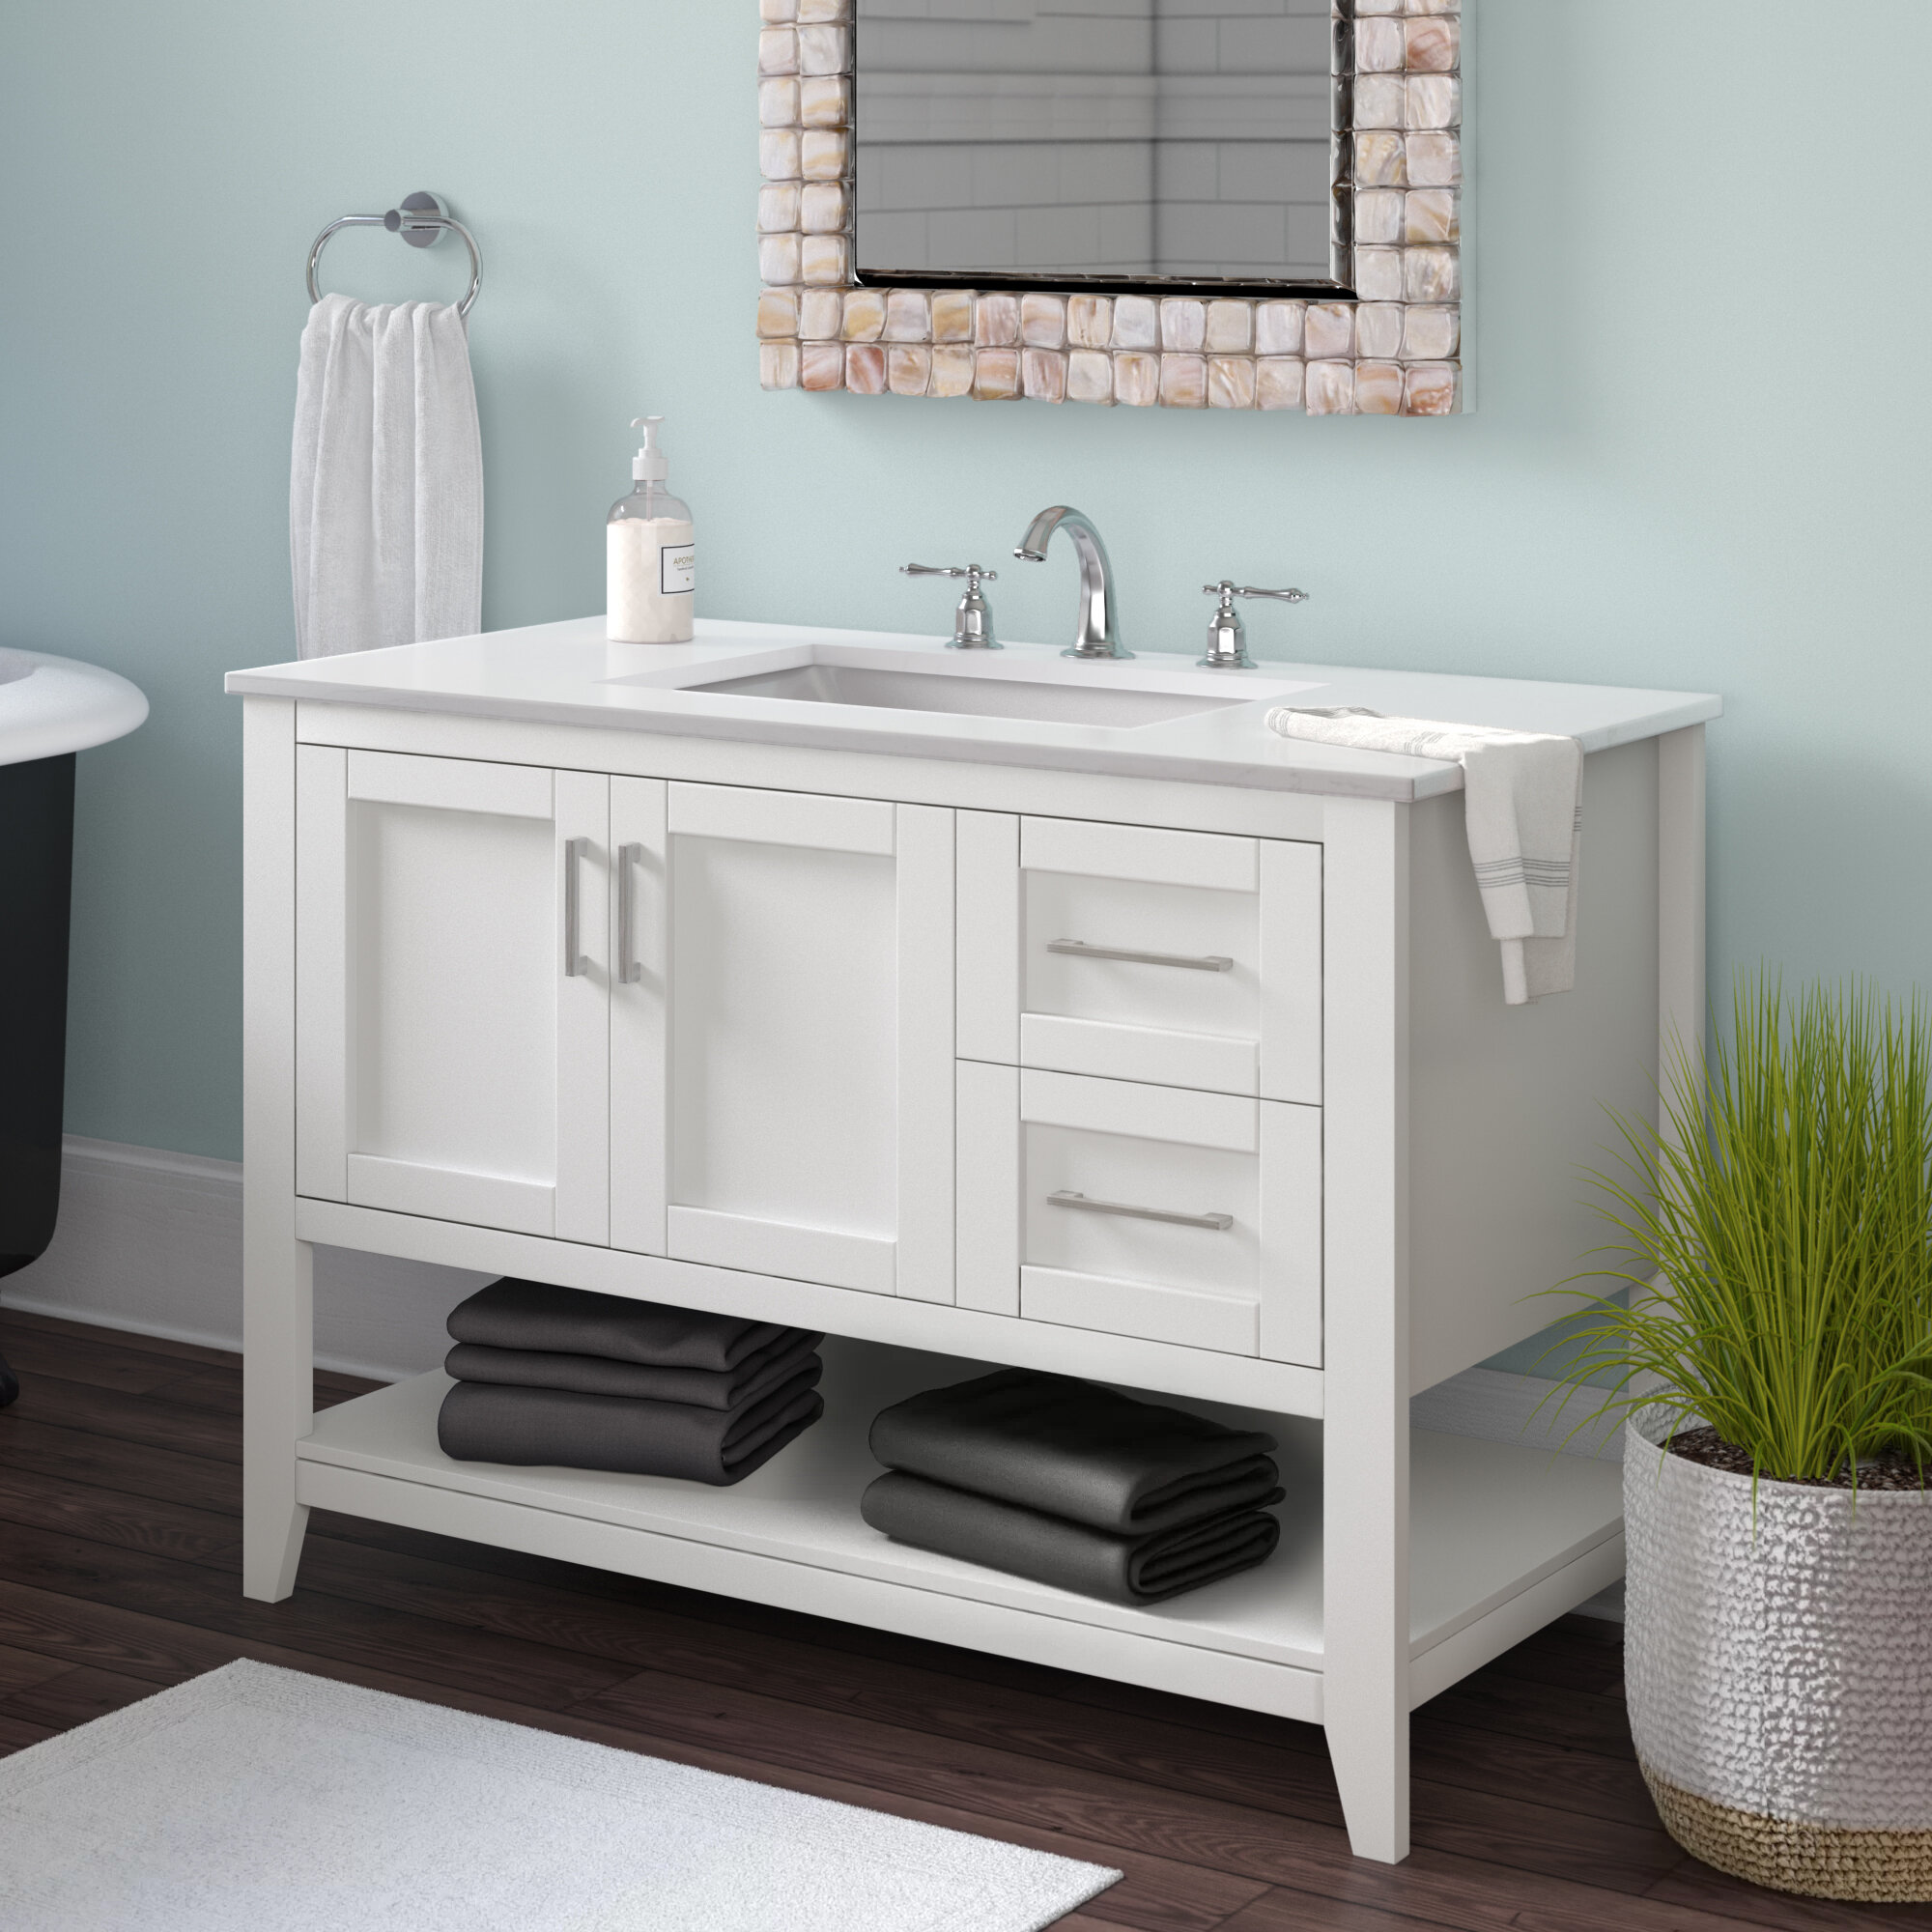 Beachcrest Home Caoimhe 42 Single Bathroom Vanity Set Reviews Wayfair